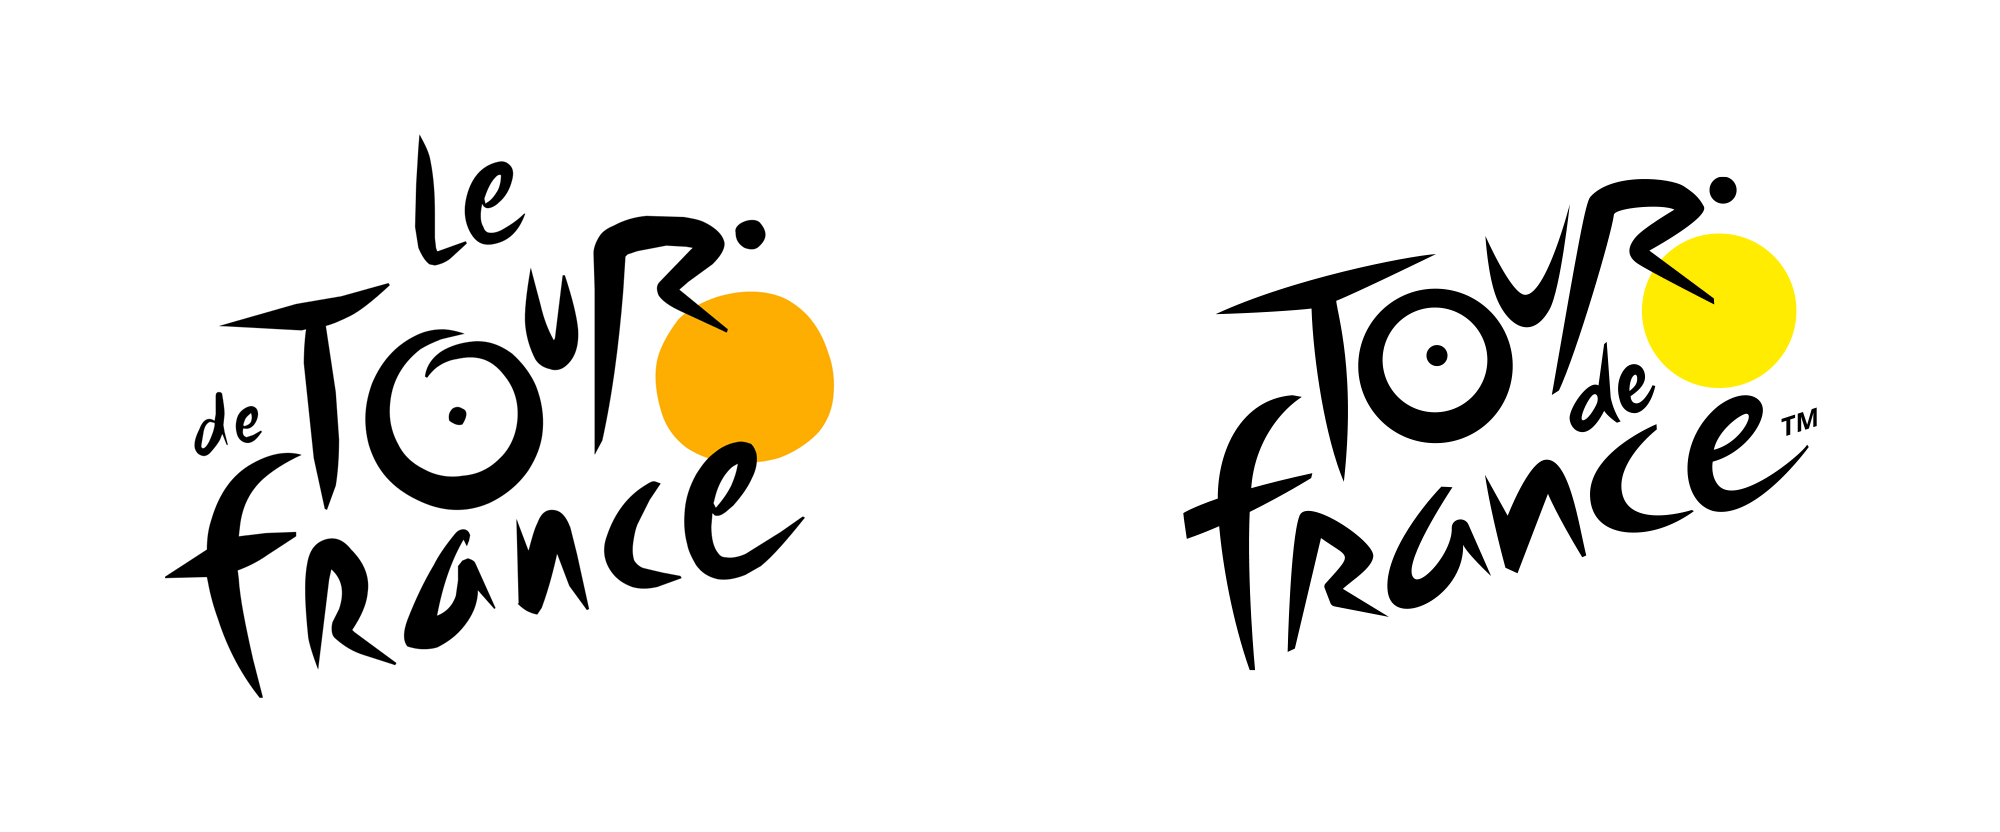 环法自行车赛启用了一个全新设计的logo